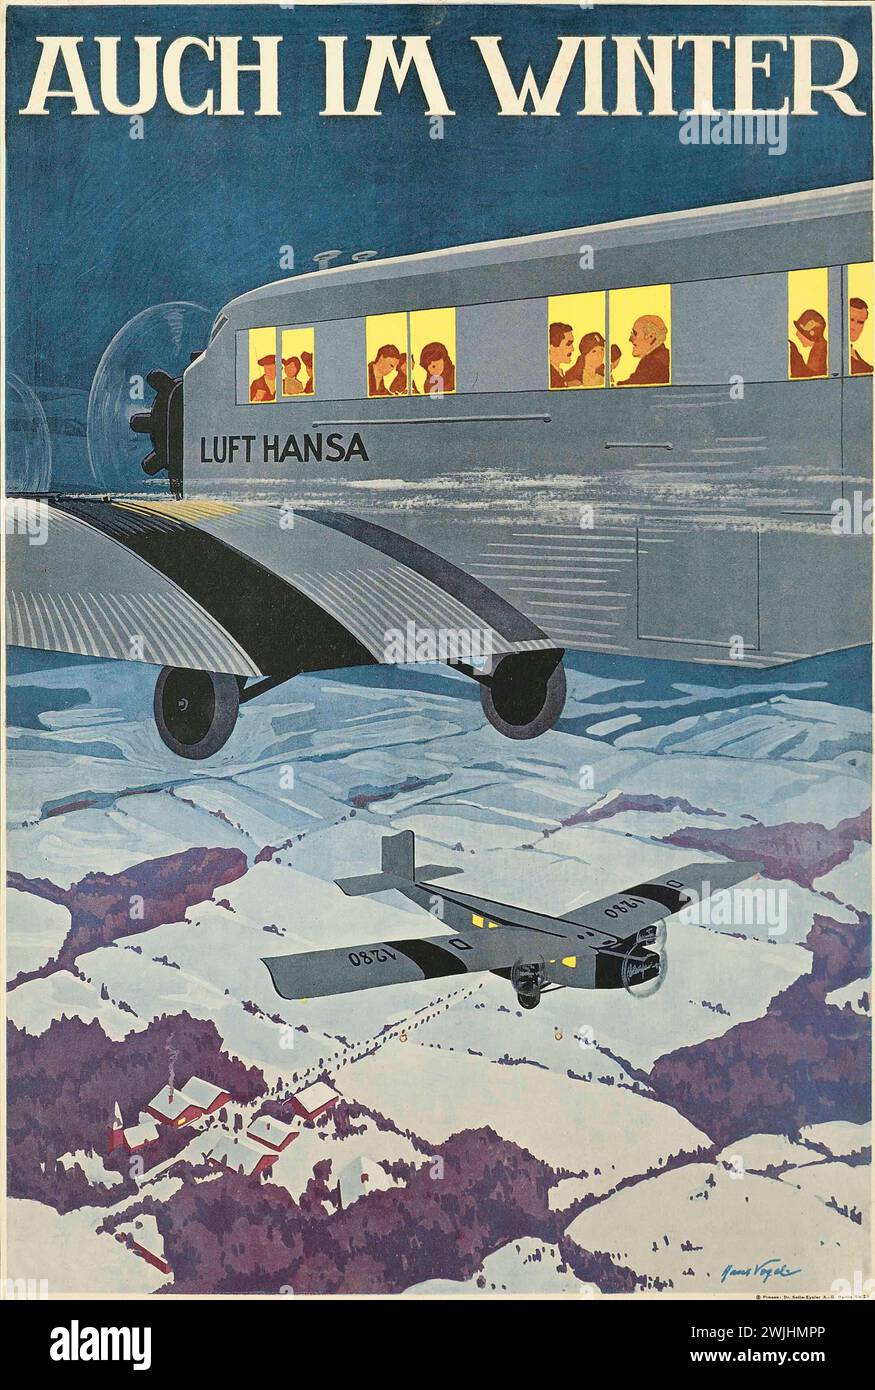 Affiche de voyage vintage. Affiche publicitaire Lufthansa Vintage montrant un avion survolant des terres neigeuses, avec le slogan « Auch Im Winter » (même en hiver. Allemagne des années 1930 Banque D'Images